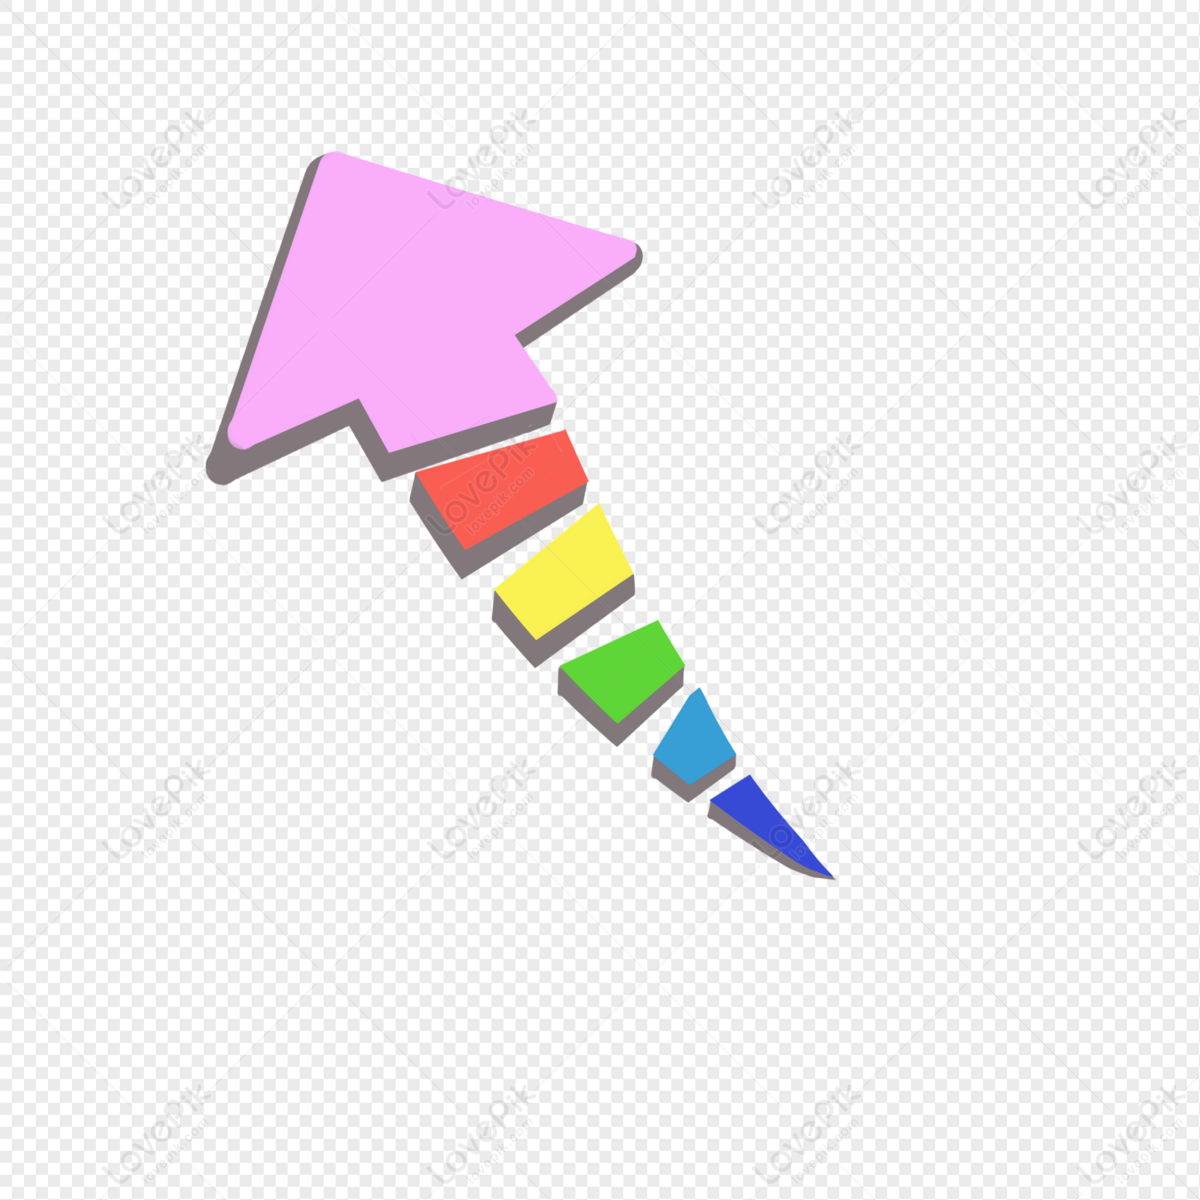 Flechas Coloridas De Dibujos Animados Lindo Flechas De Colores La | My ...